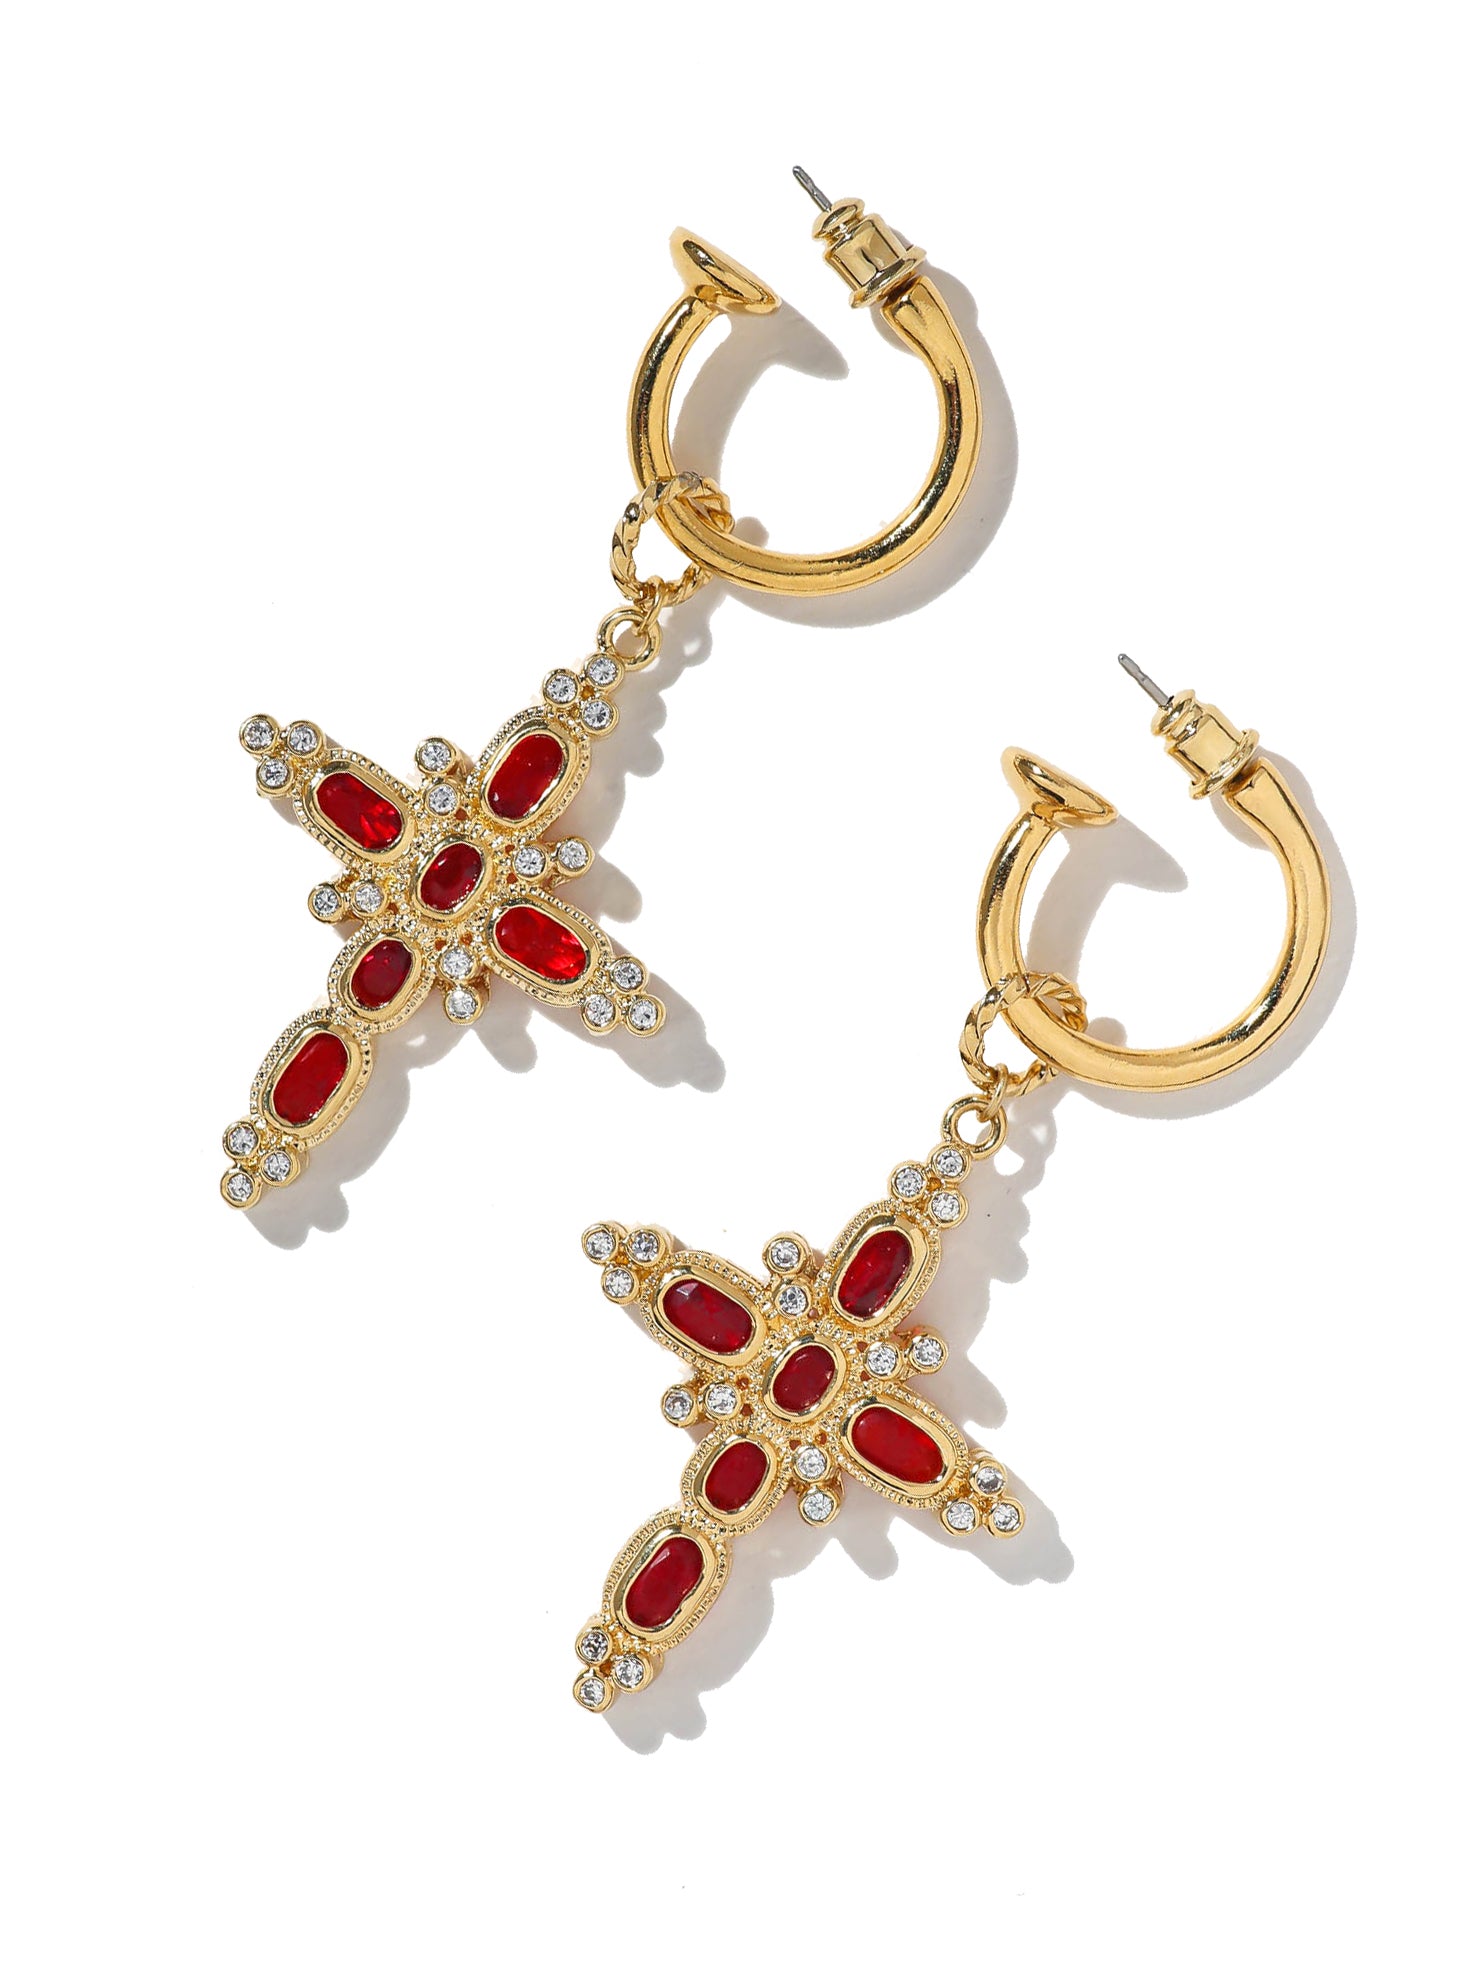 The Aalia Ruby Cross Earrings